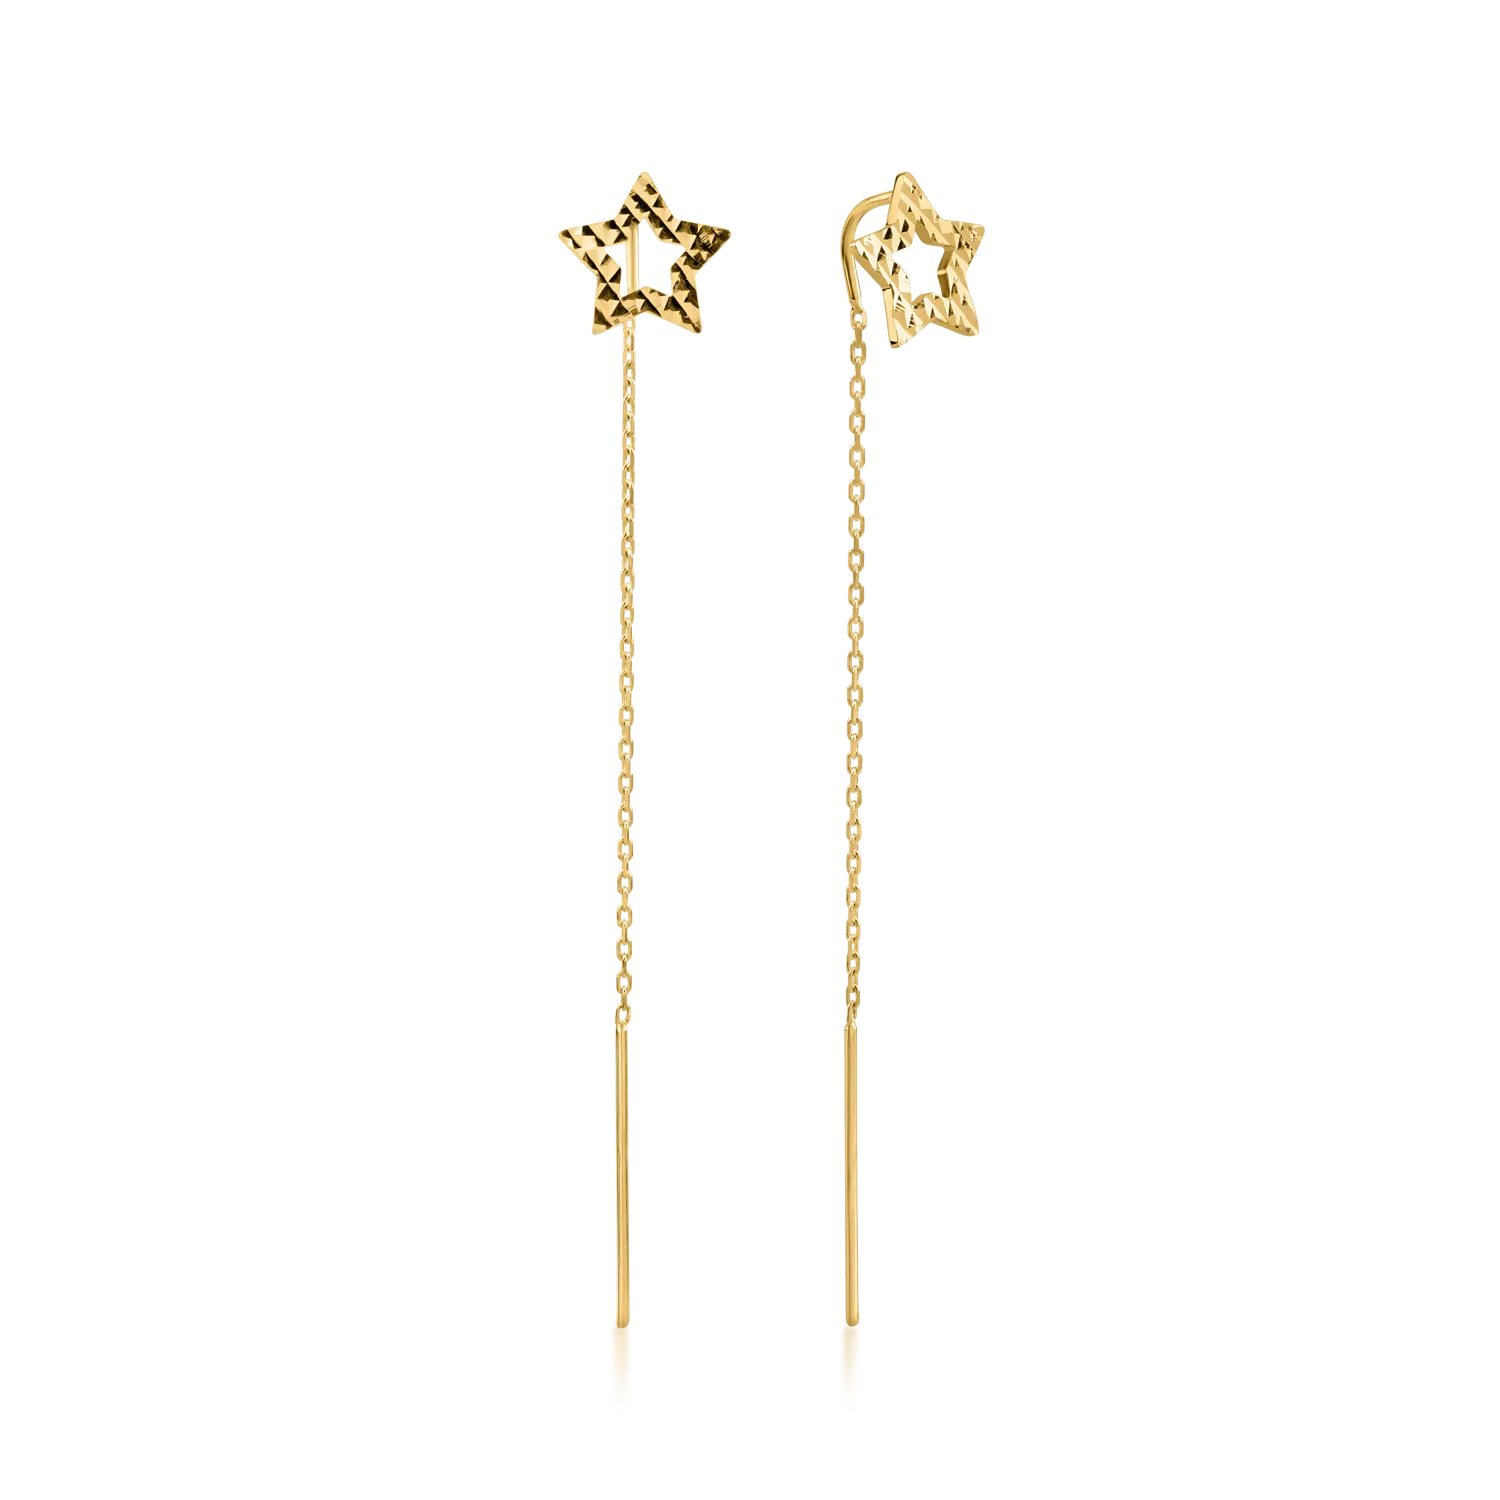 Długie kolczyki w kształcie gwiazdek z żółtego złota